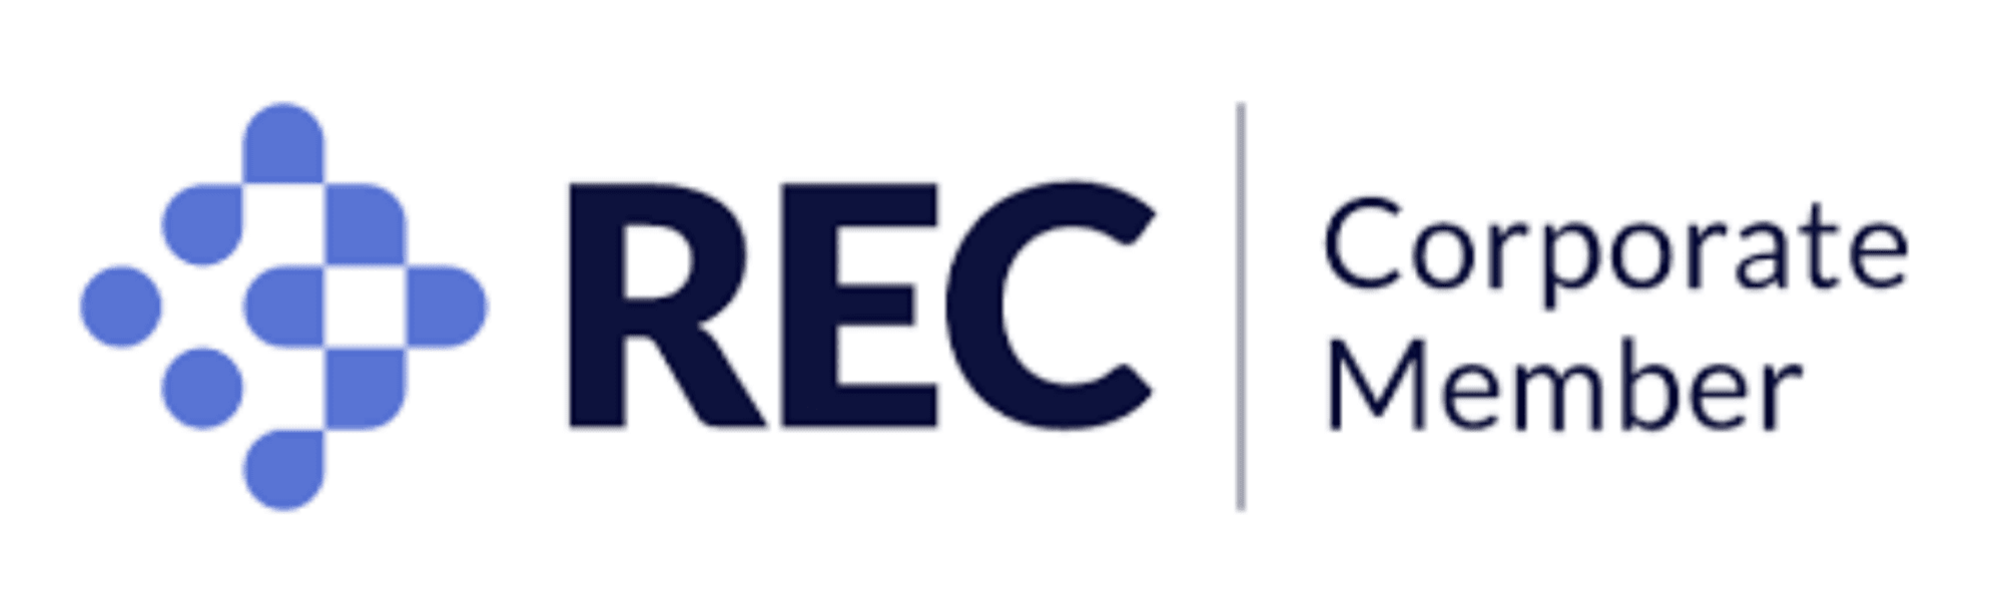 The REC Corporate Membership